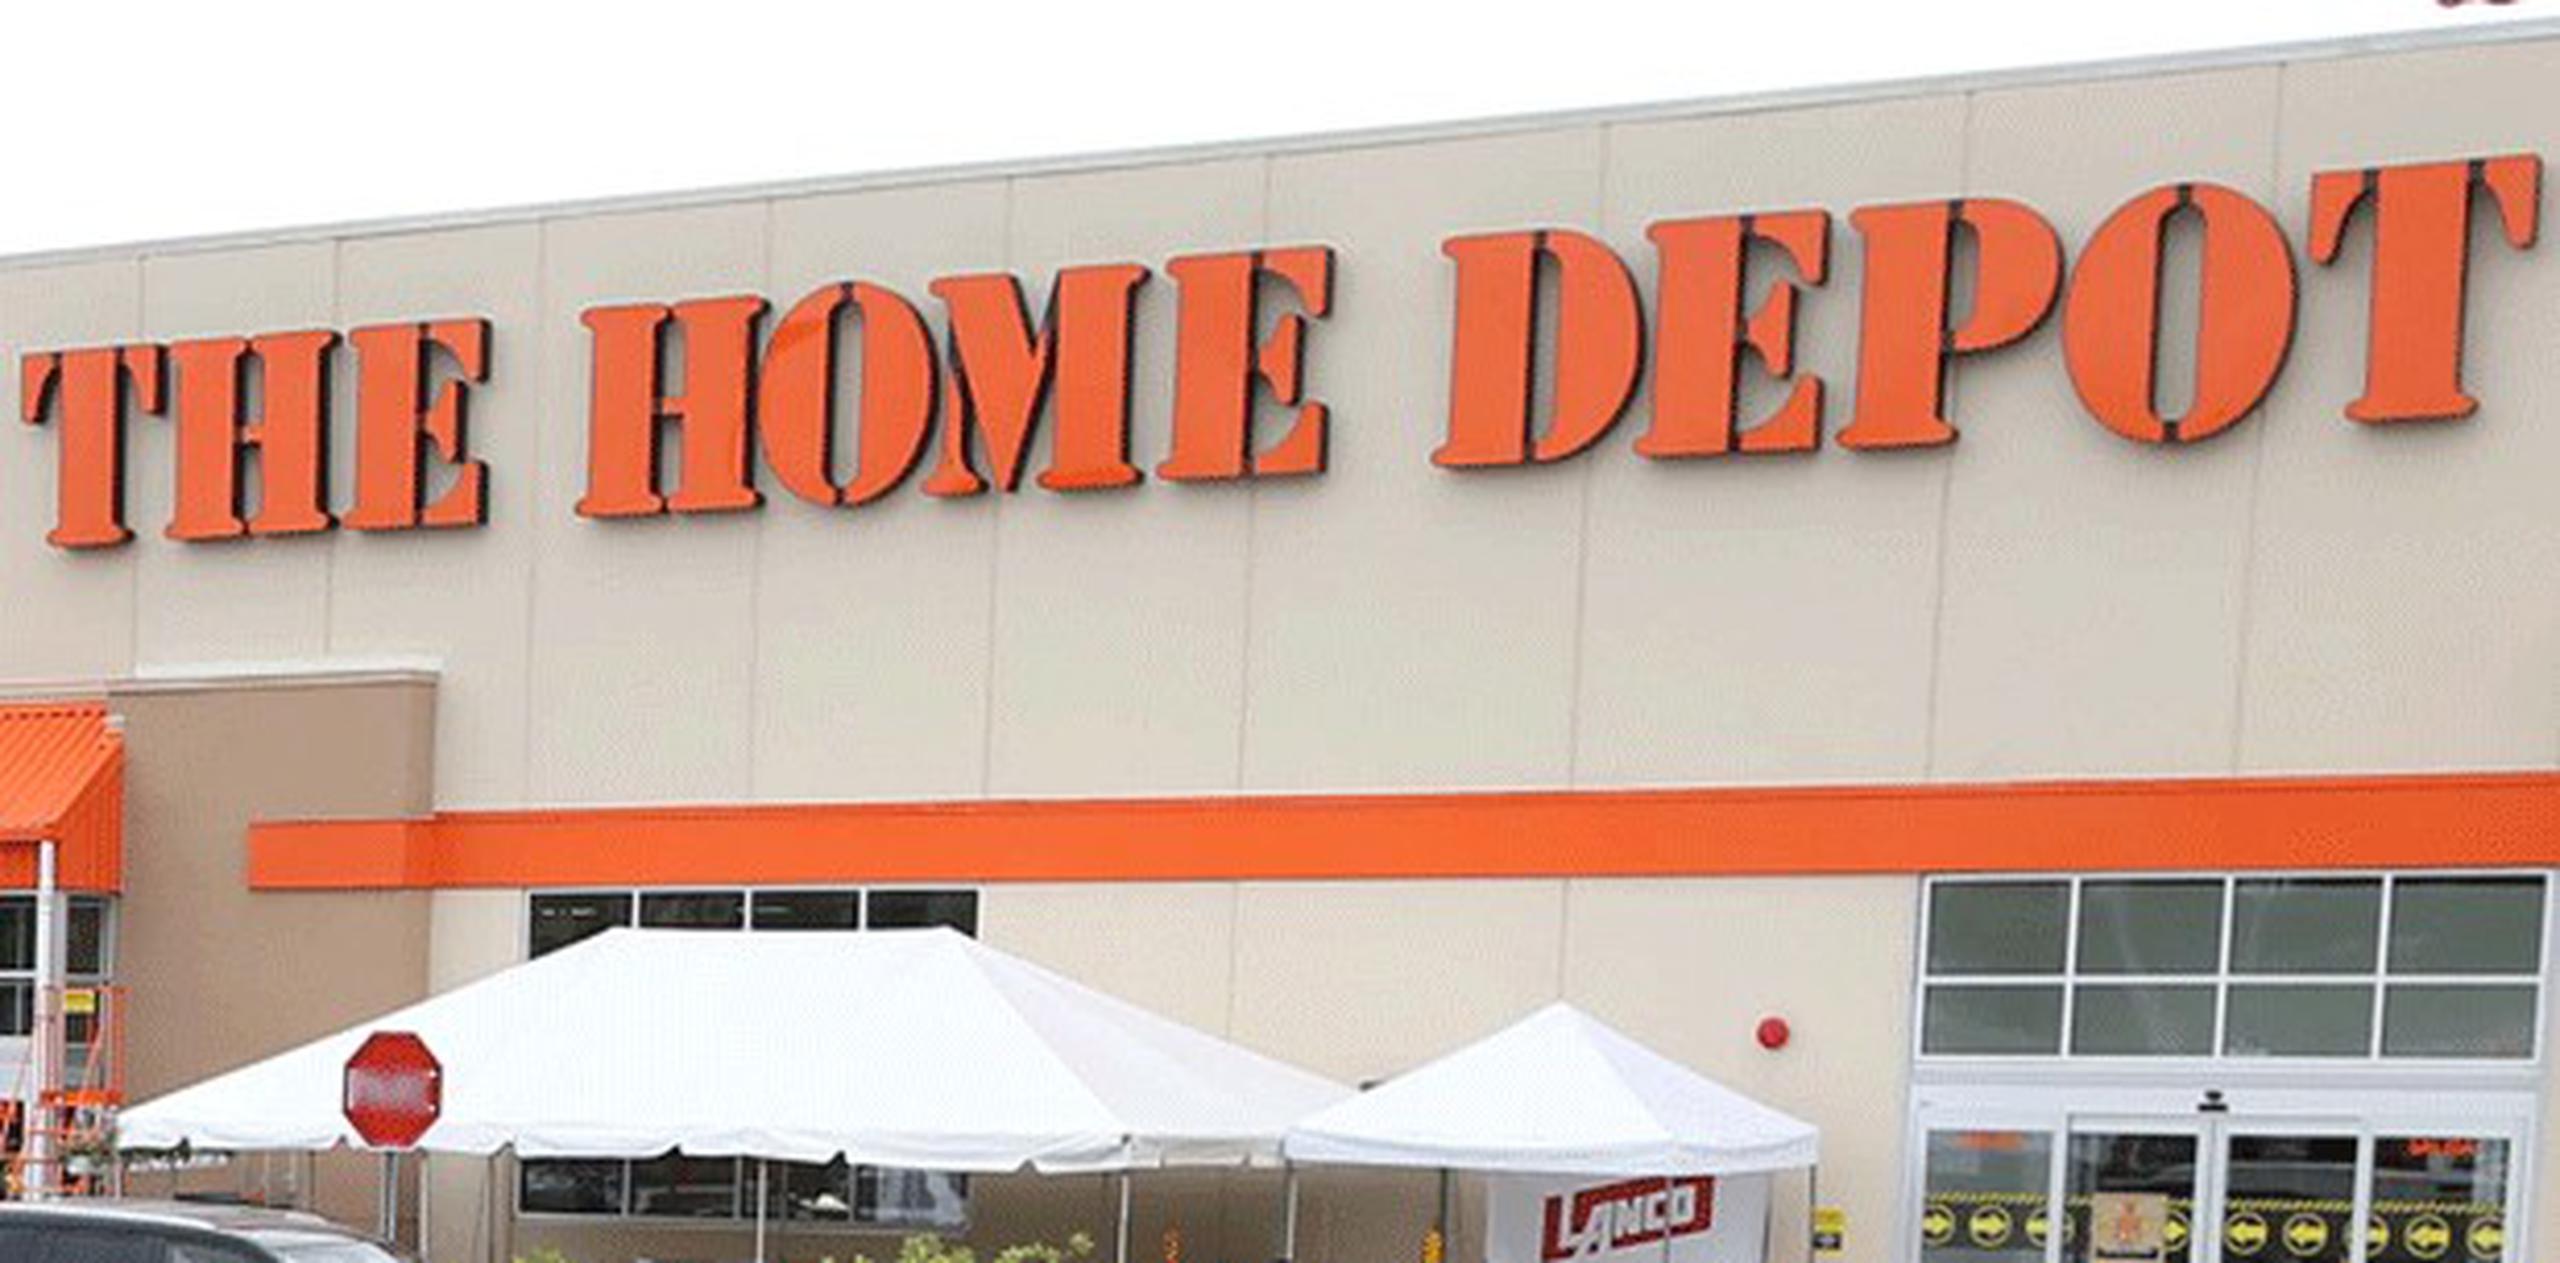 El caso de Daniel Sheehan se derivó de una alerta que obligó a evacuar una tienda Home Depot en Huntington en octubre de 2012. (Archivo)